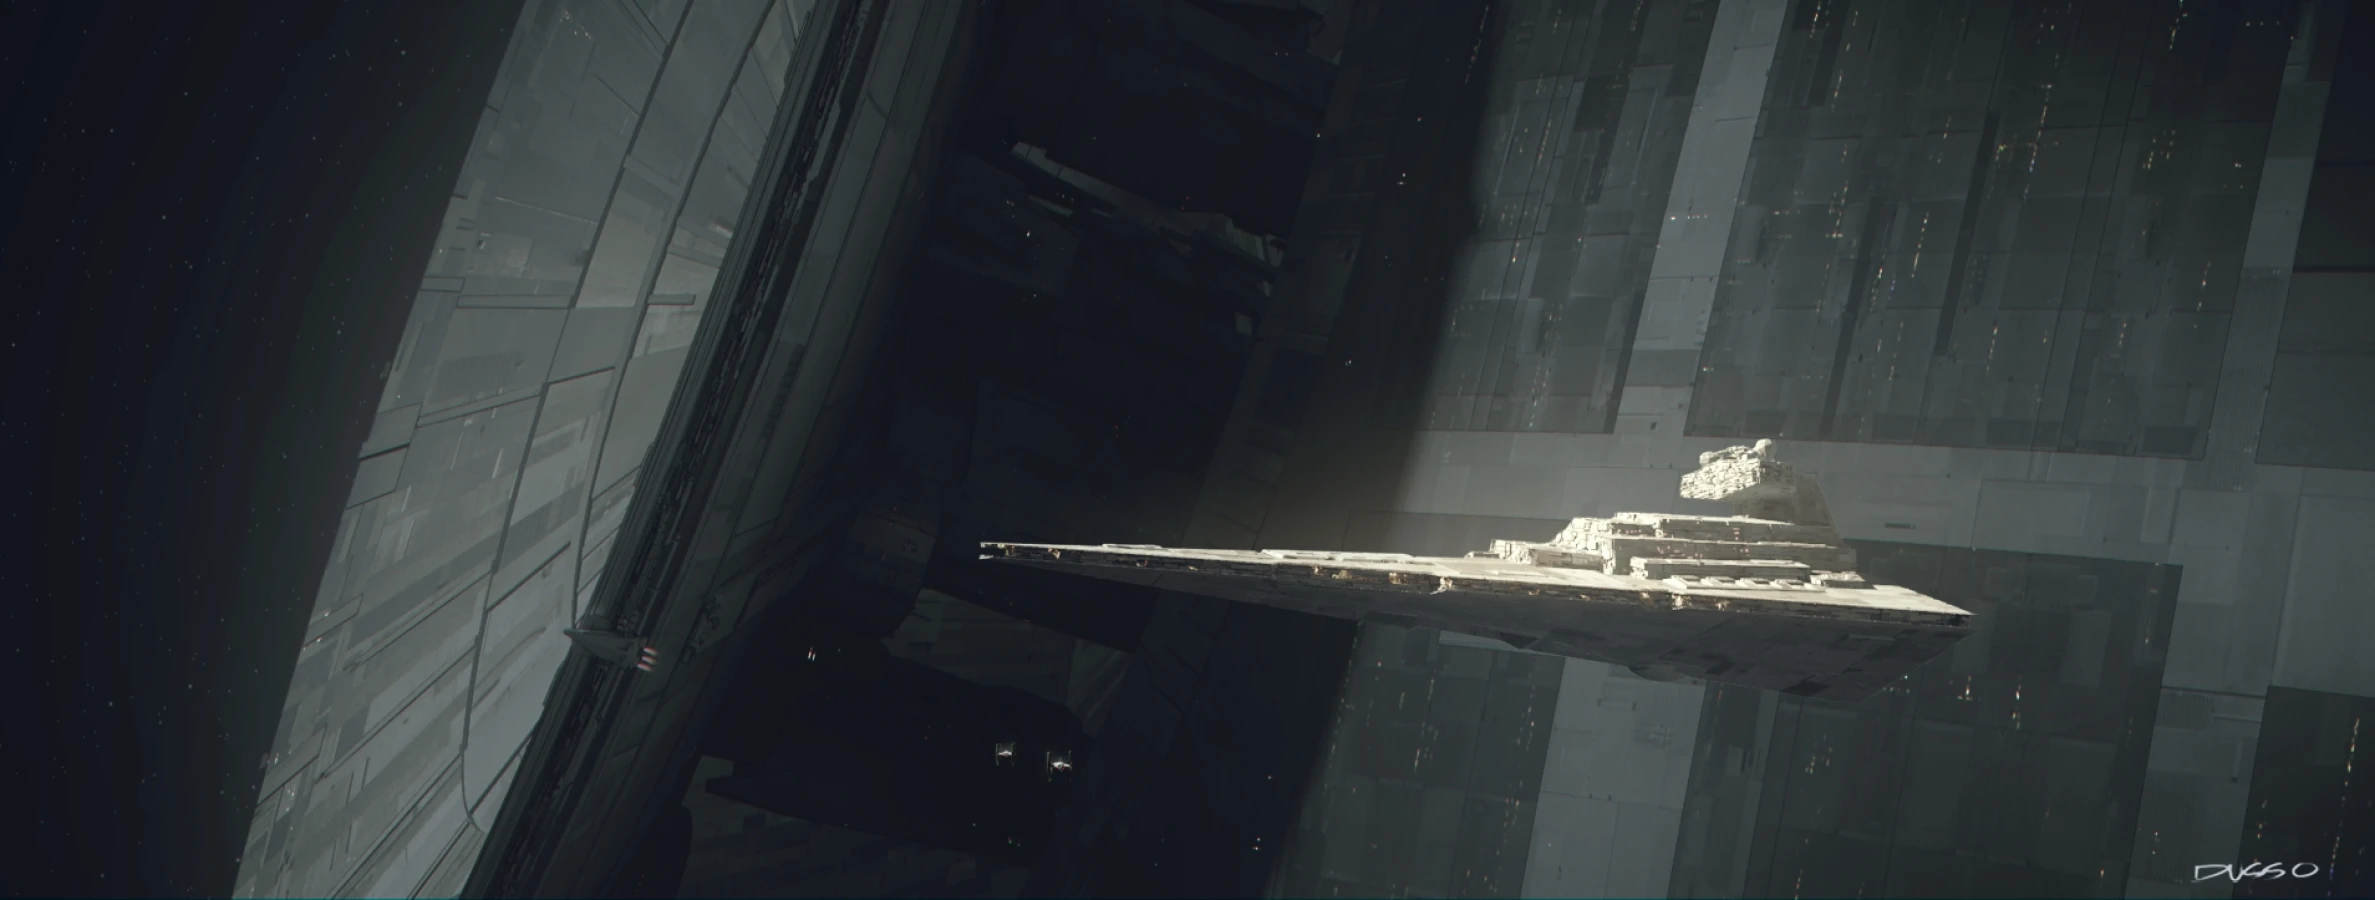  Star Wars spaceship destroyer base concept art by Dusso 